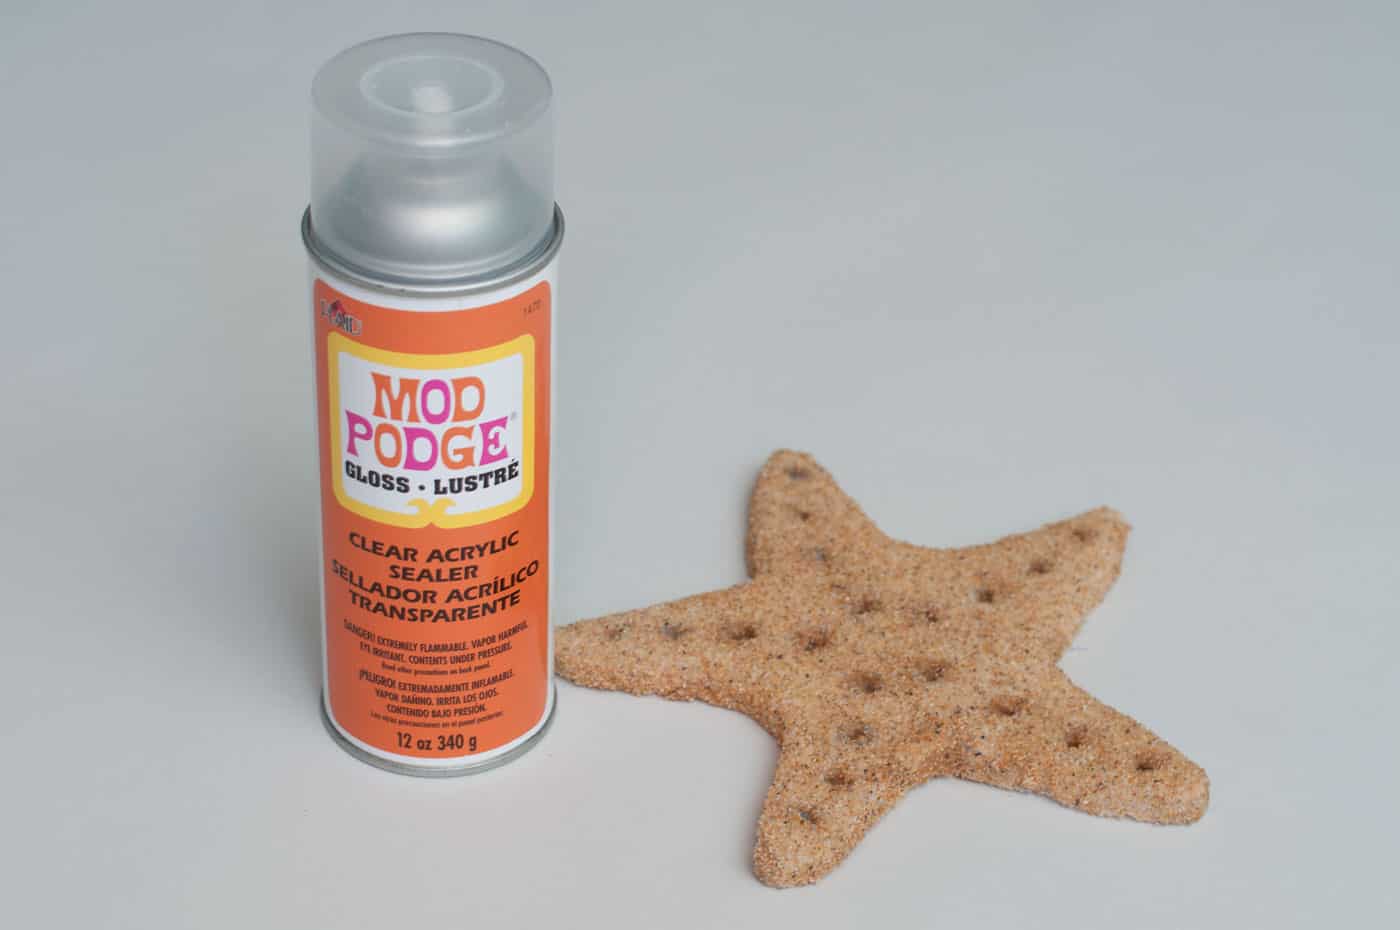 Mod Podge gloss spray and a DIY starfish